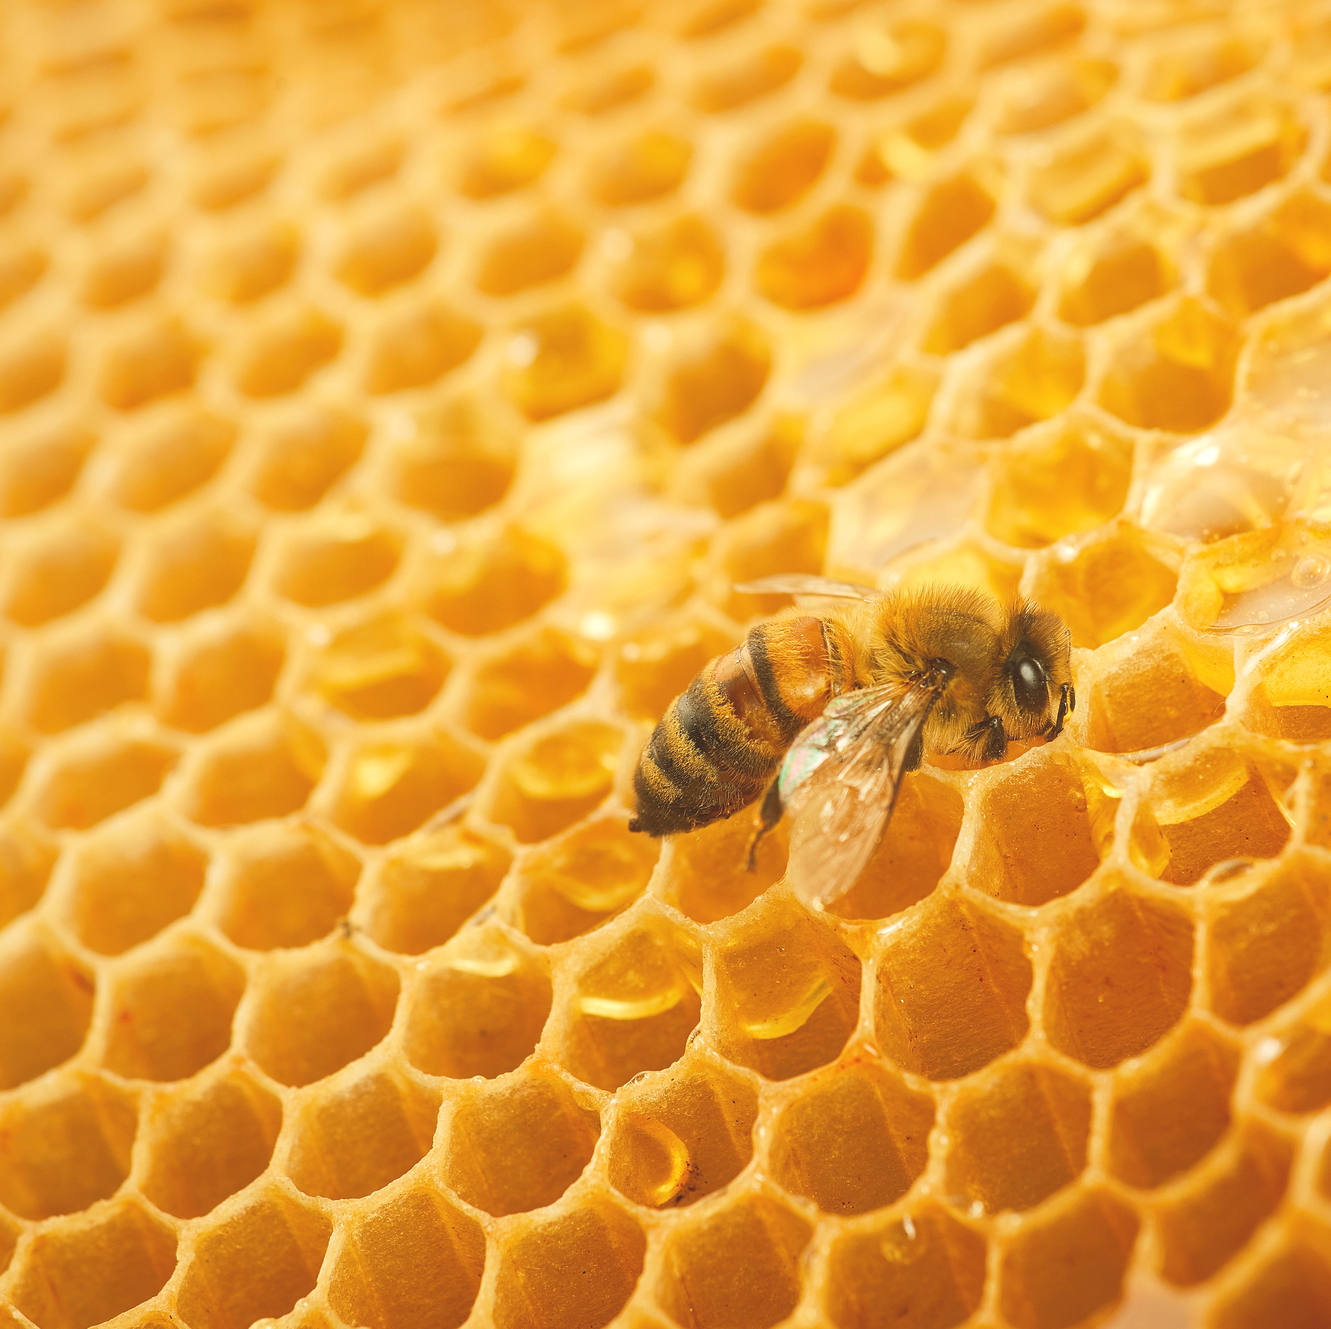 Пчеловодов должны проинформировать о предстоящих обработках сельхозугодий пестицидами